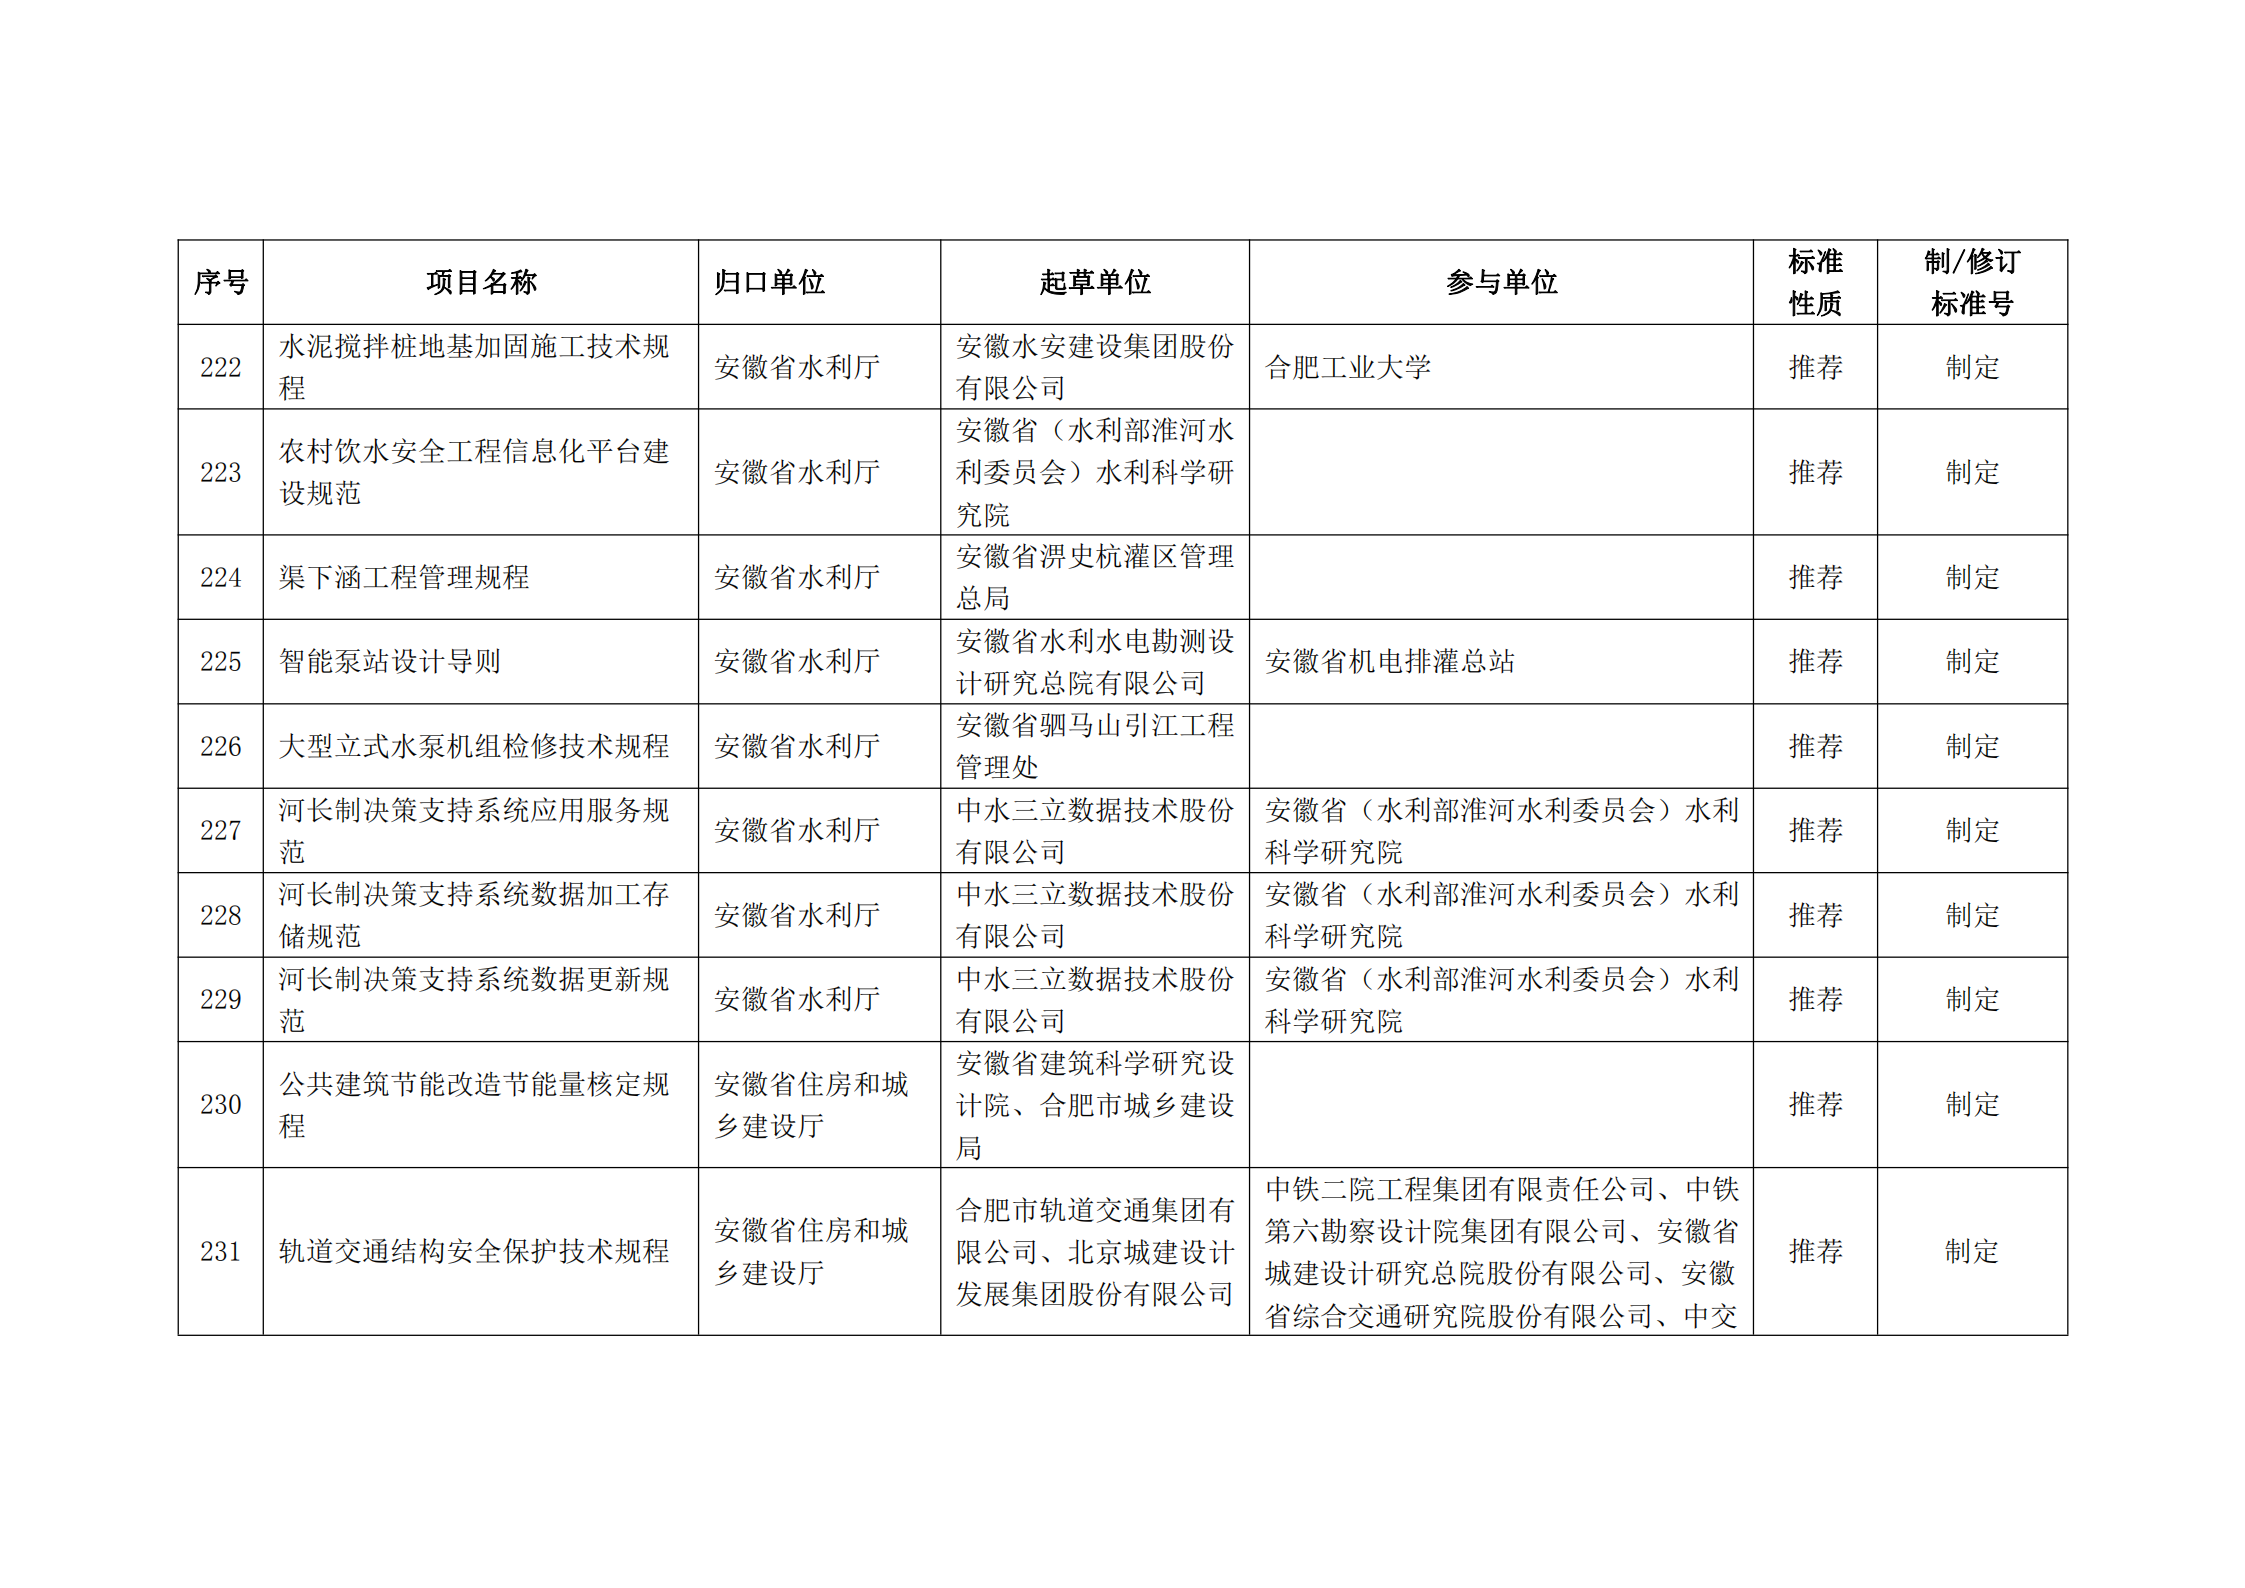 2020 年第二批安徽省地方标准制、修订计划项目汇总表(图25)